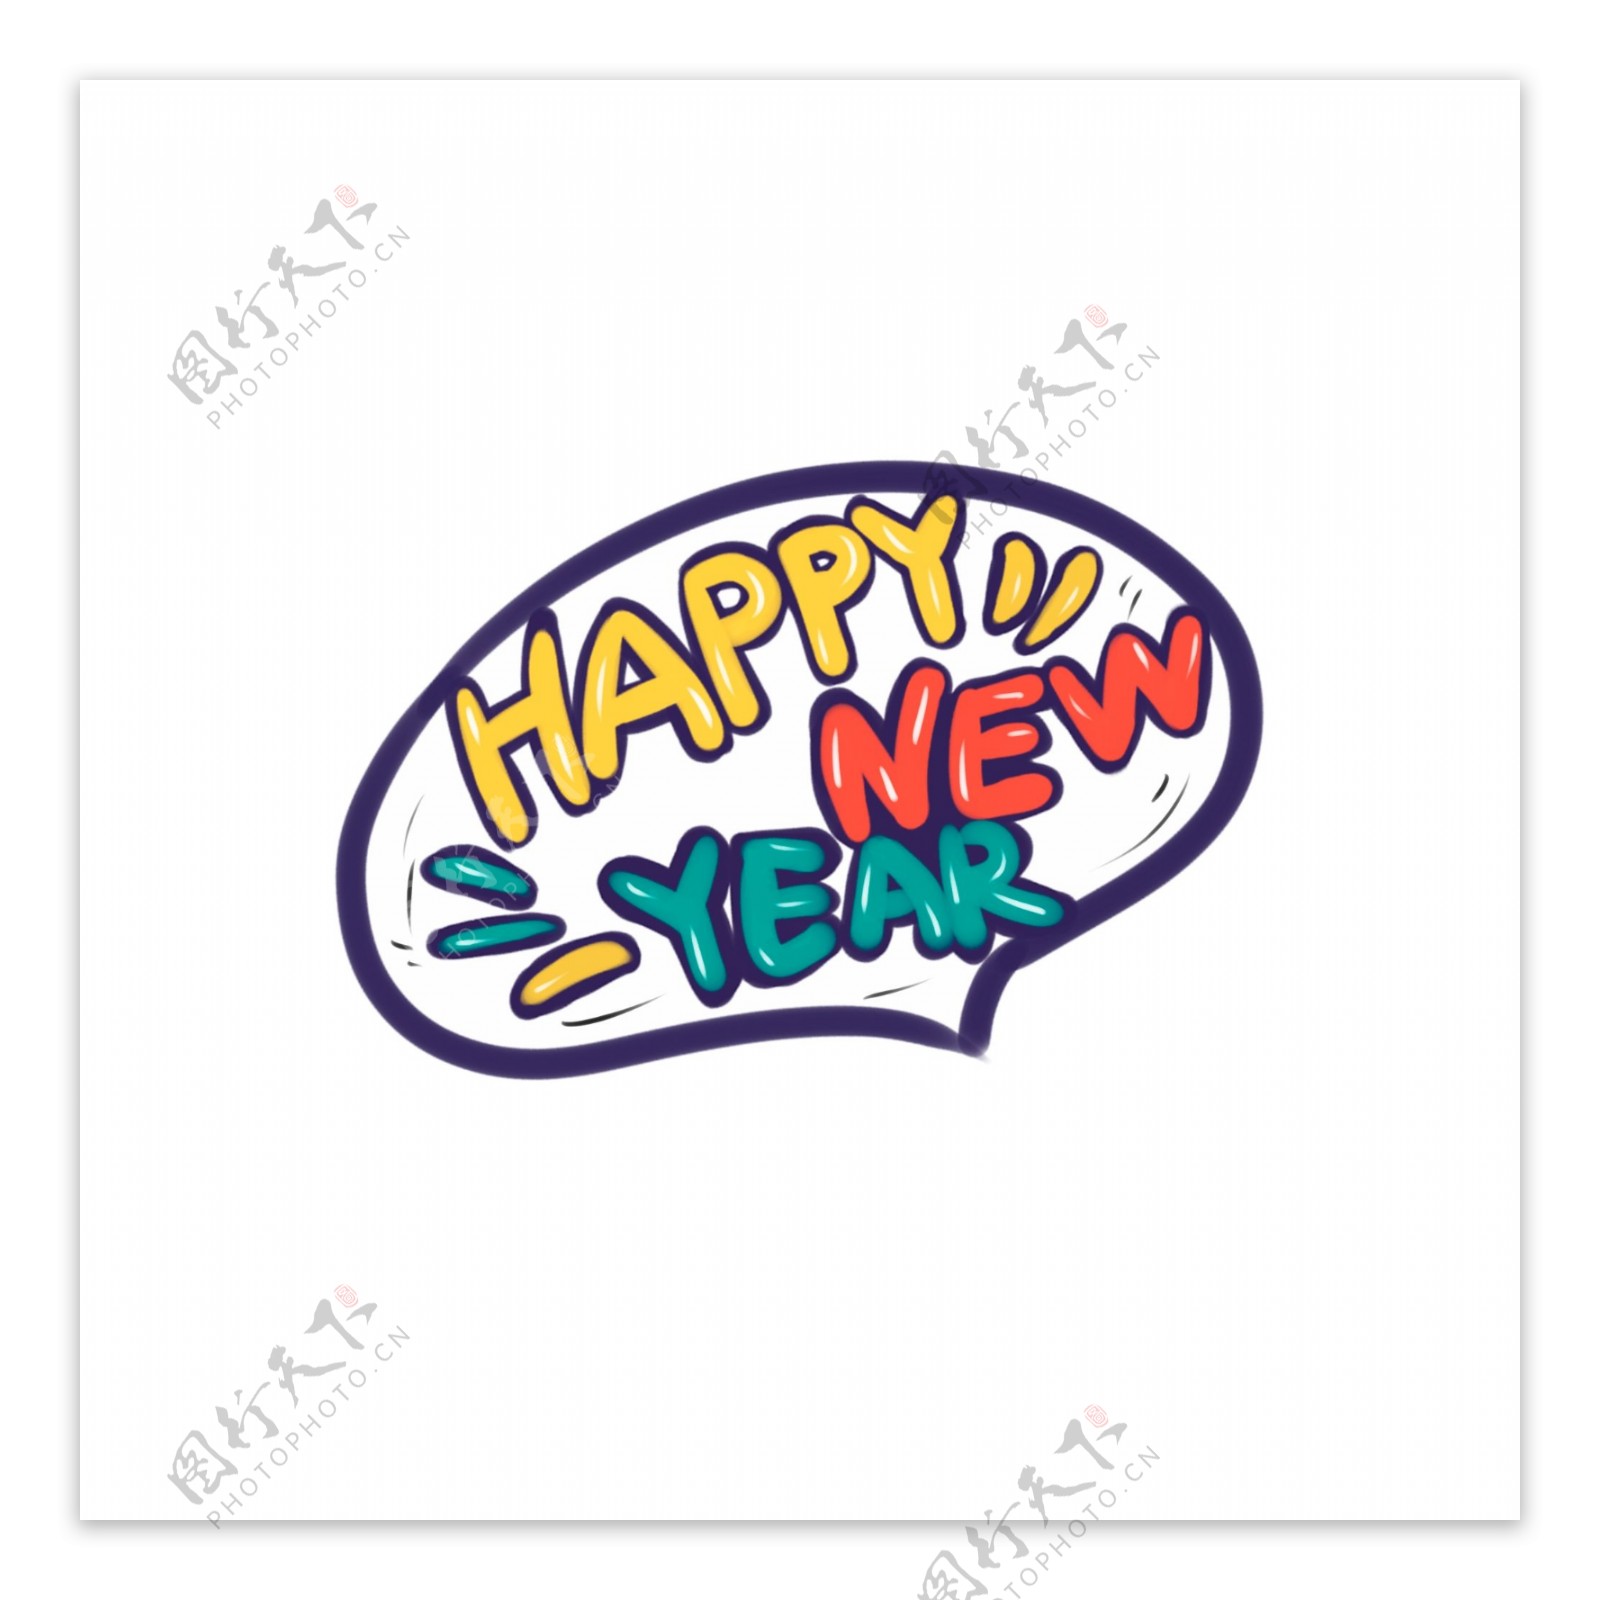 彩色卡通新年快乐语言气泡设计